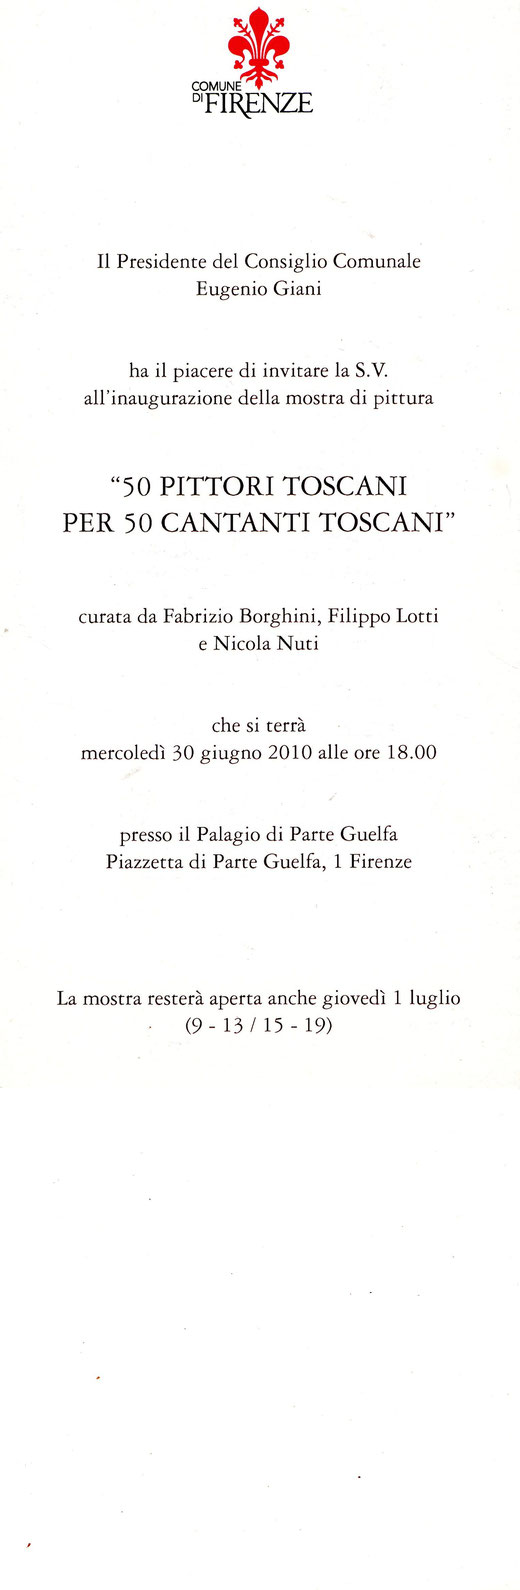 50 PITTORI TOSCANI per 50 CANTANTI TOSCANI. Mostra curata da Fabrizio Borghini, Filippo Lotti e Nicola Nuti